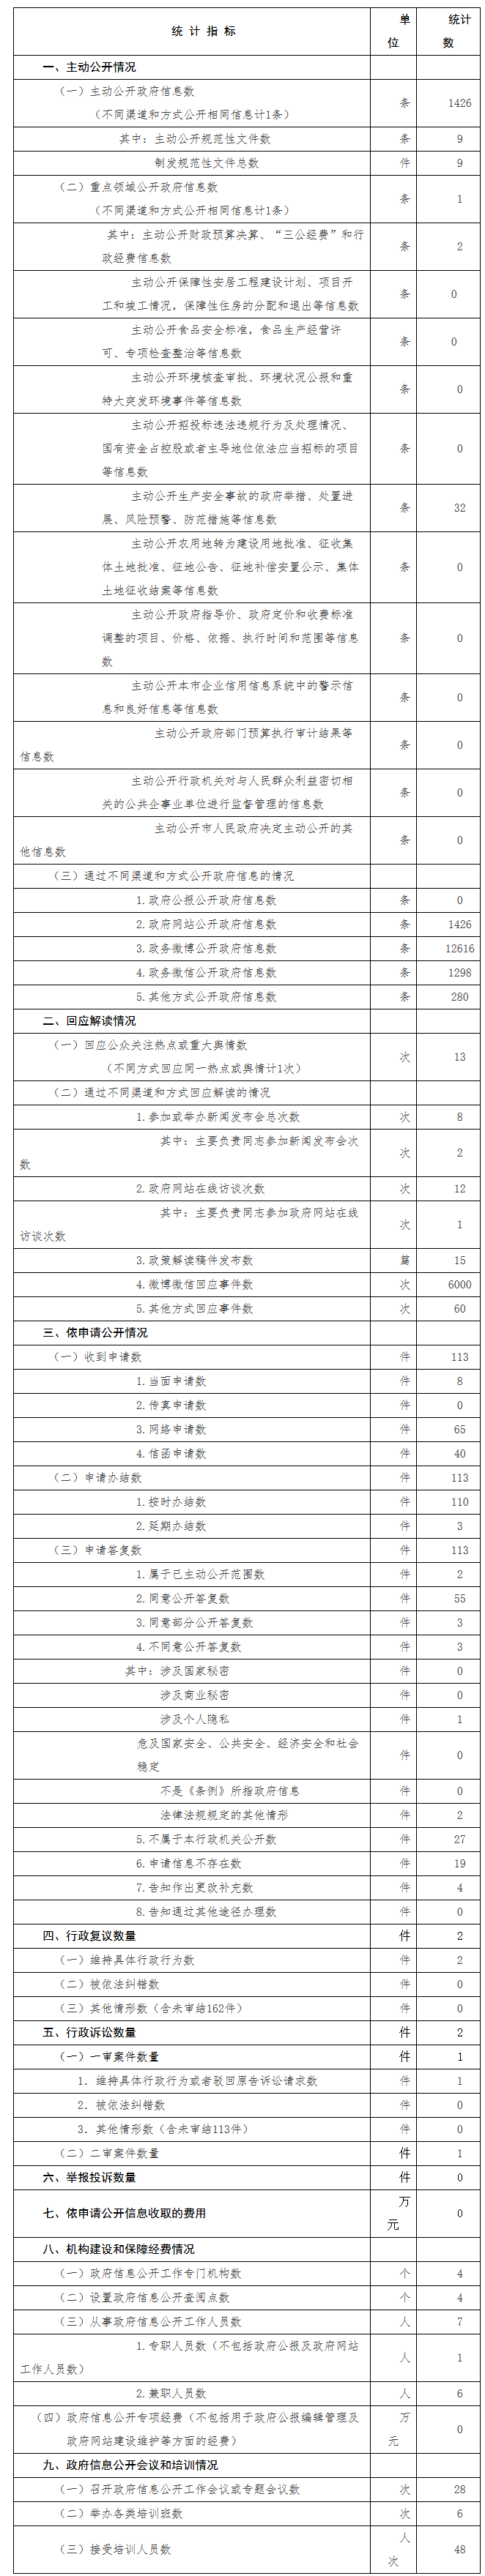 北京市交通委員會政府信息公開情況統計表(2017年度)